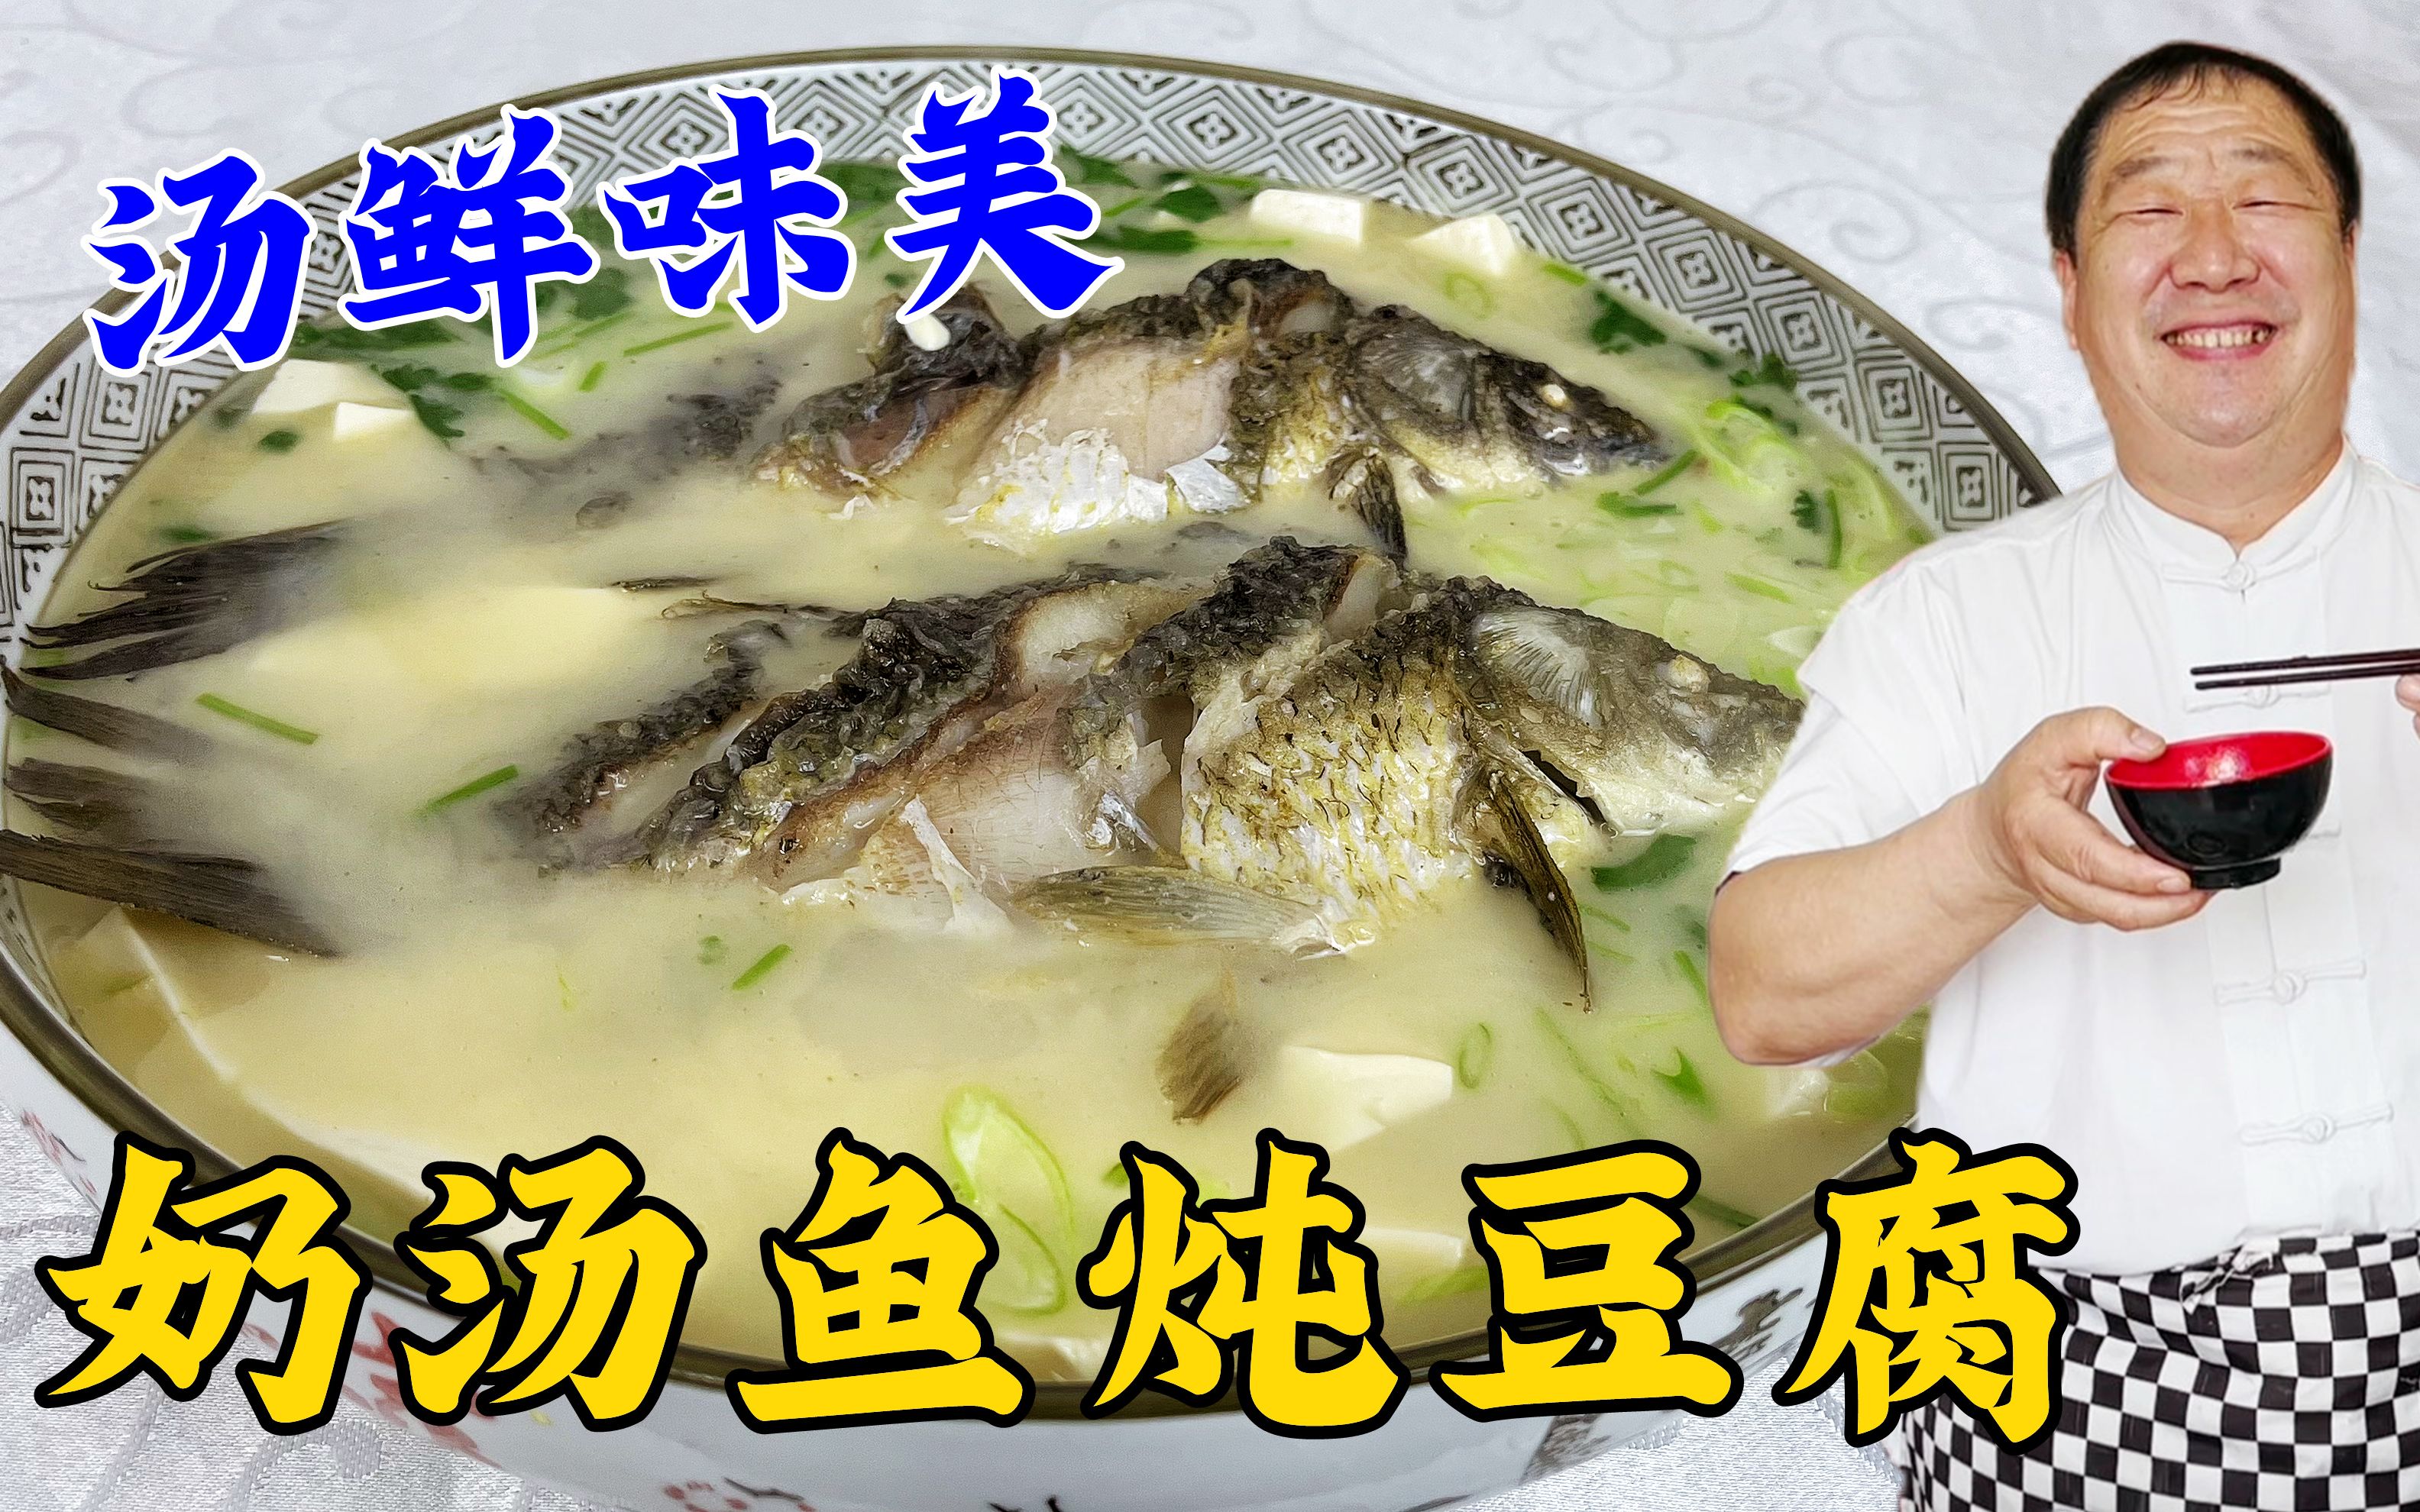 一道营养美味的海鲜大餐来啦！黄骨鱼炖豆腐的家常做法！ - 哔哩哔哩